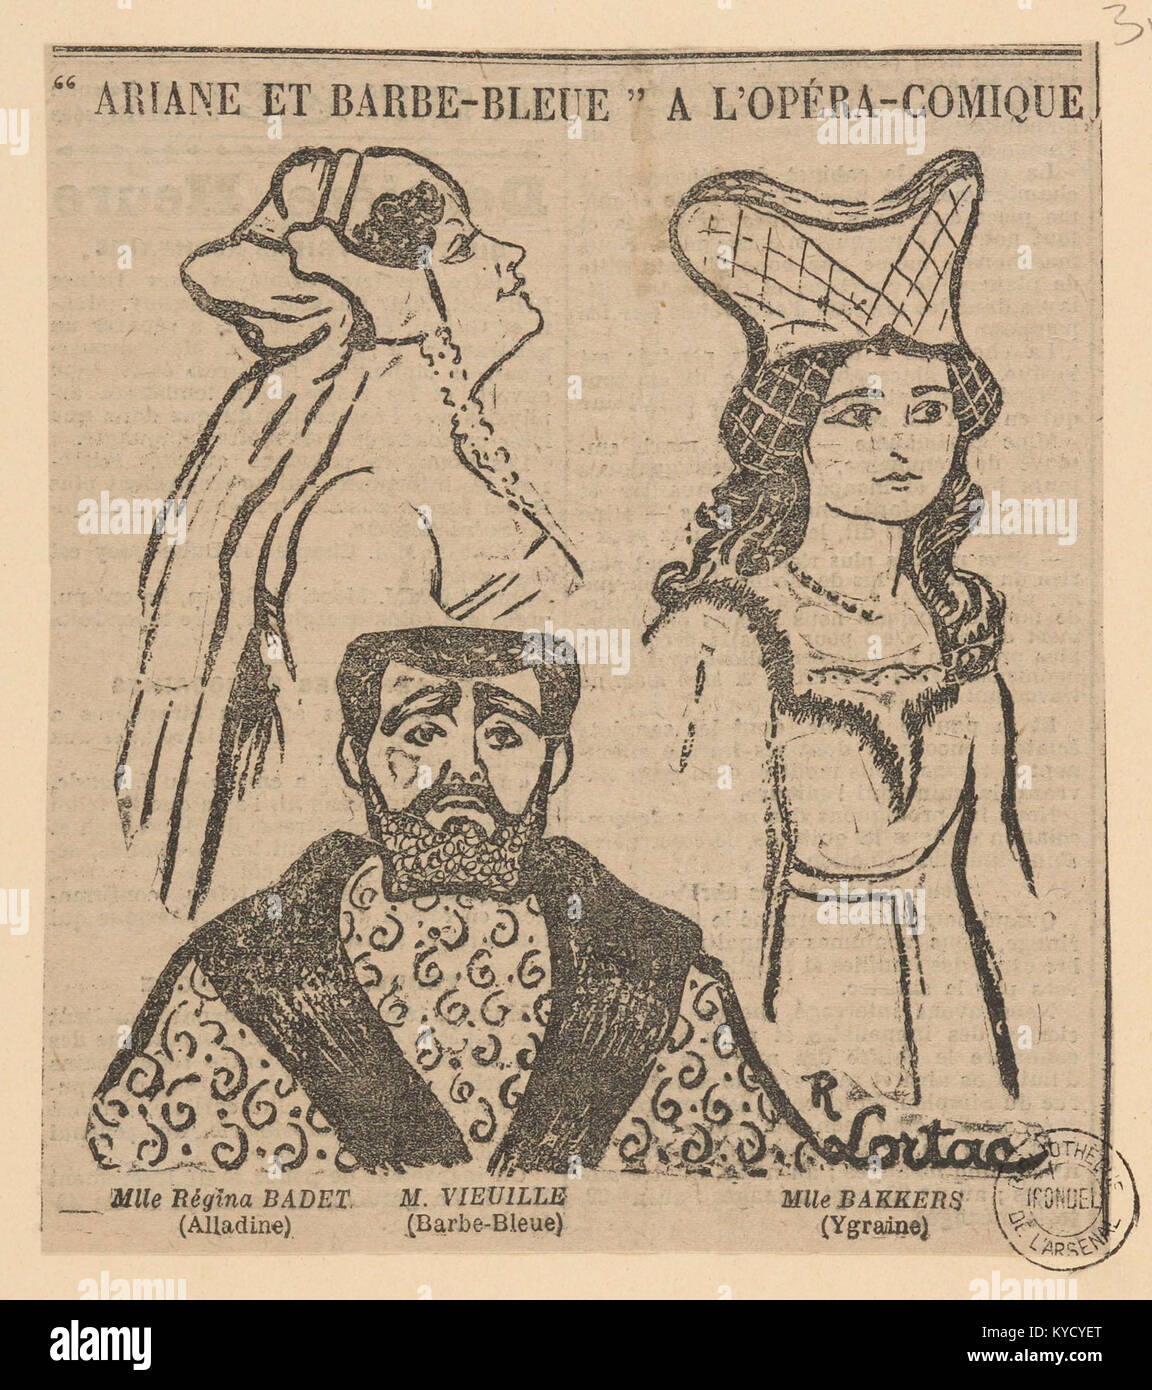 Paul Dukas - Ariane et Barbe-Bleue - Mlle Régina Badet as Alladine, M. Vieuille as Barbe-Bleue, Mlle. Bakkers as Ygraine - Paris 10-05-1907 Stock Photo